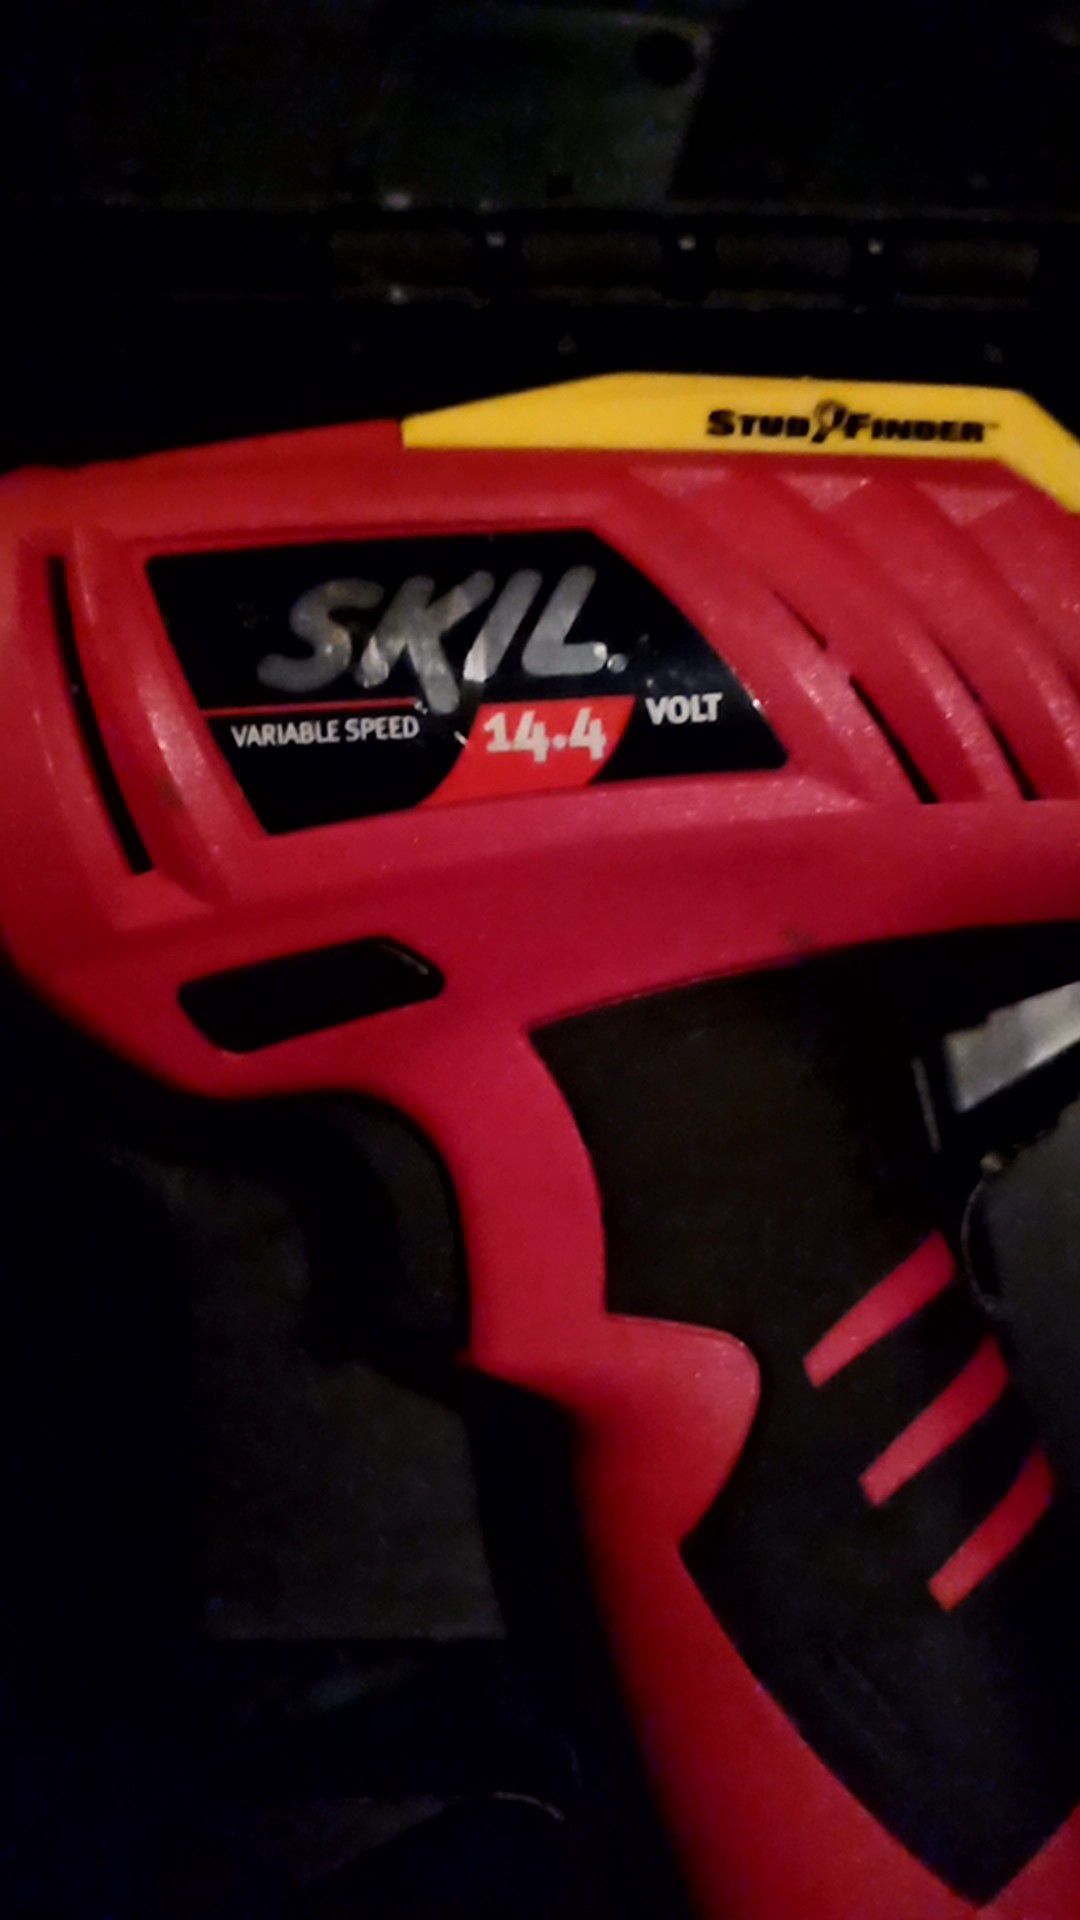 Skil power drill